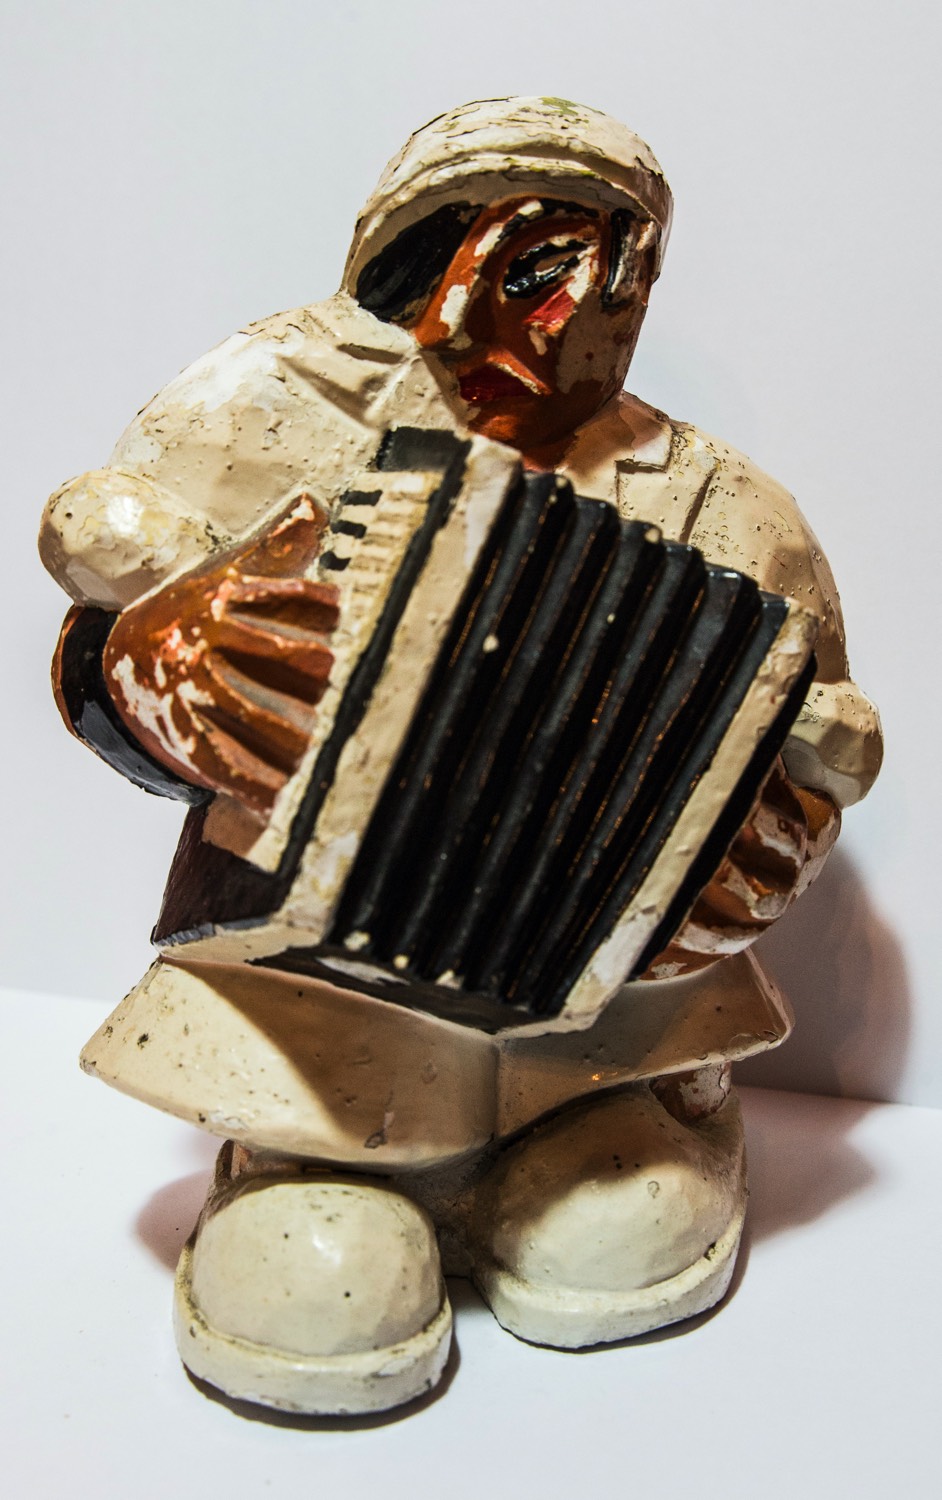 Figurine En Bois Artisanal Photographiée Dans Un Coffre Couvert De Mousse  Photo stock - Image du modèle, brun: 277245528